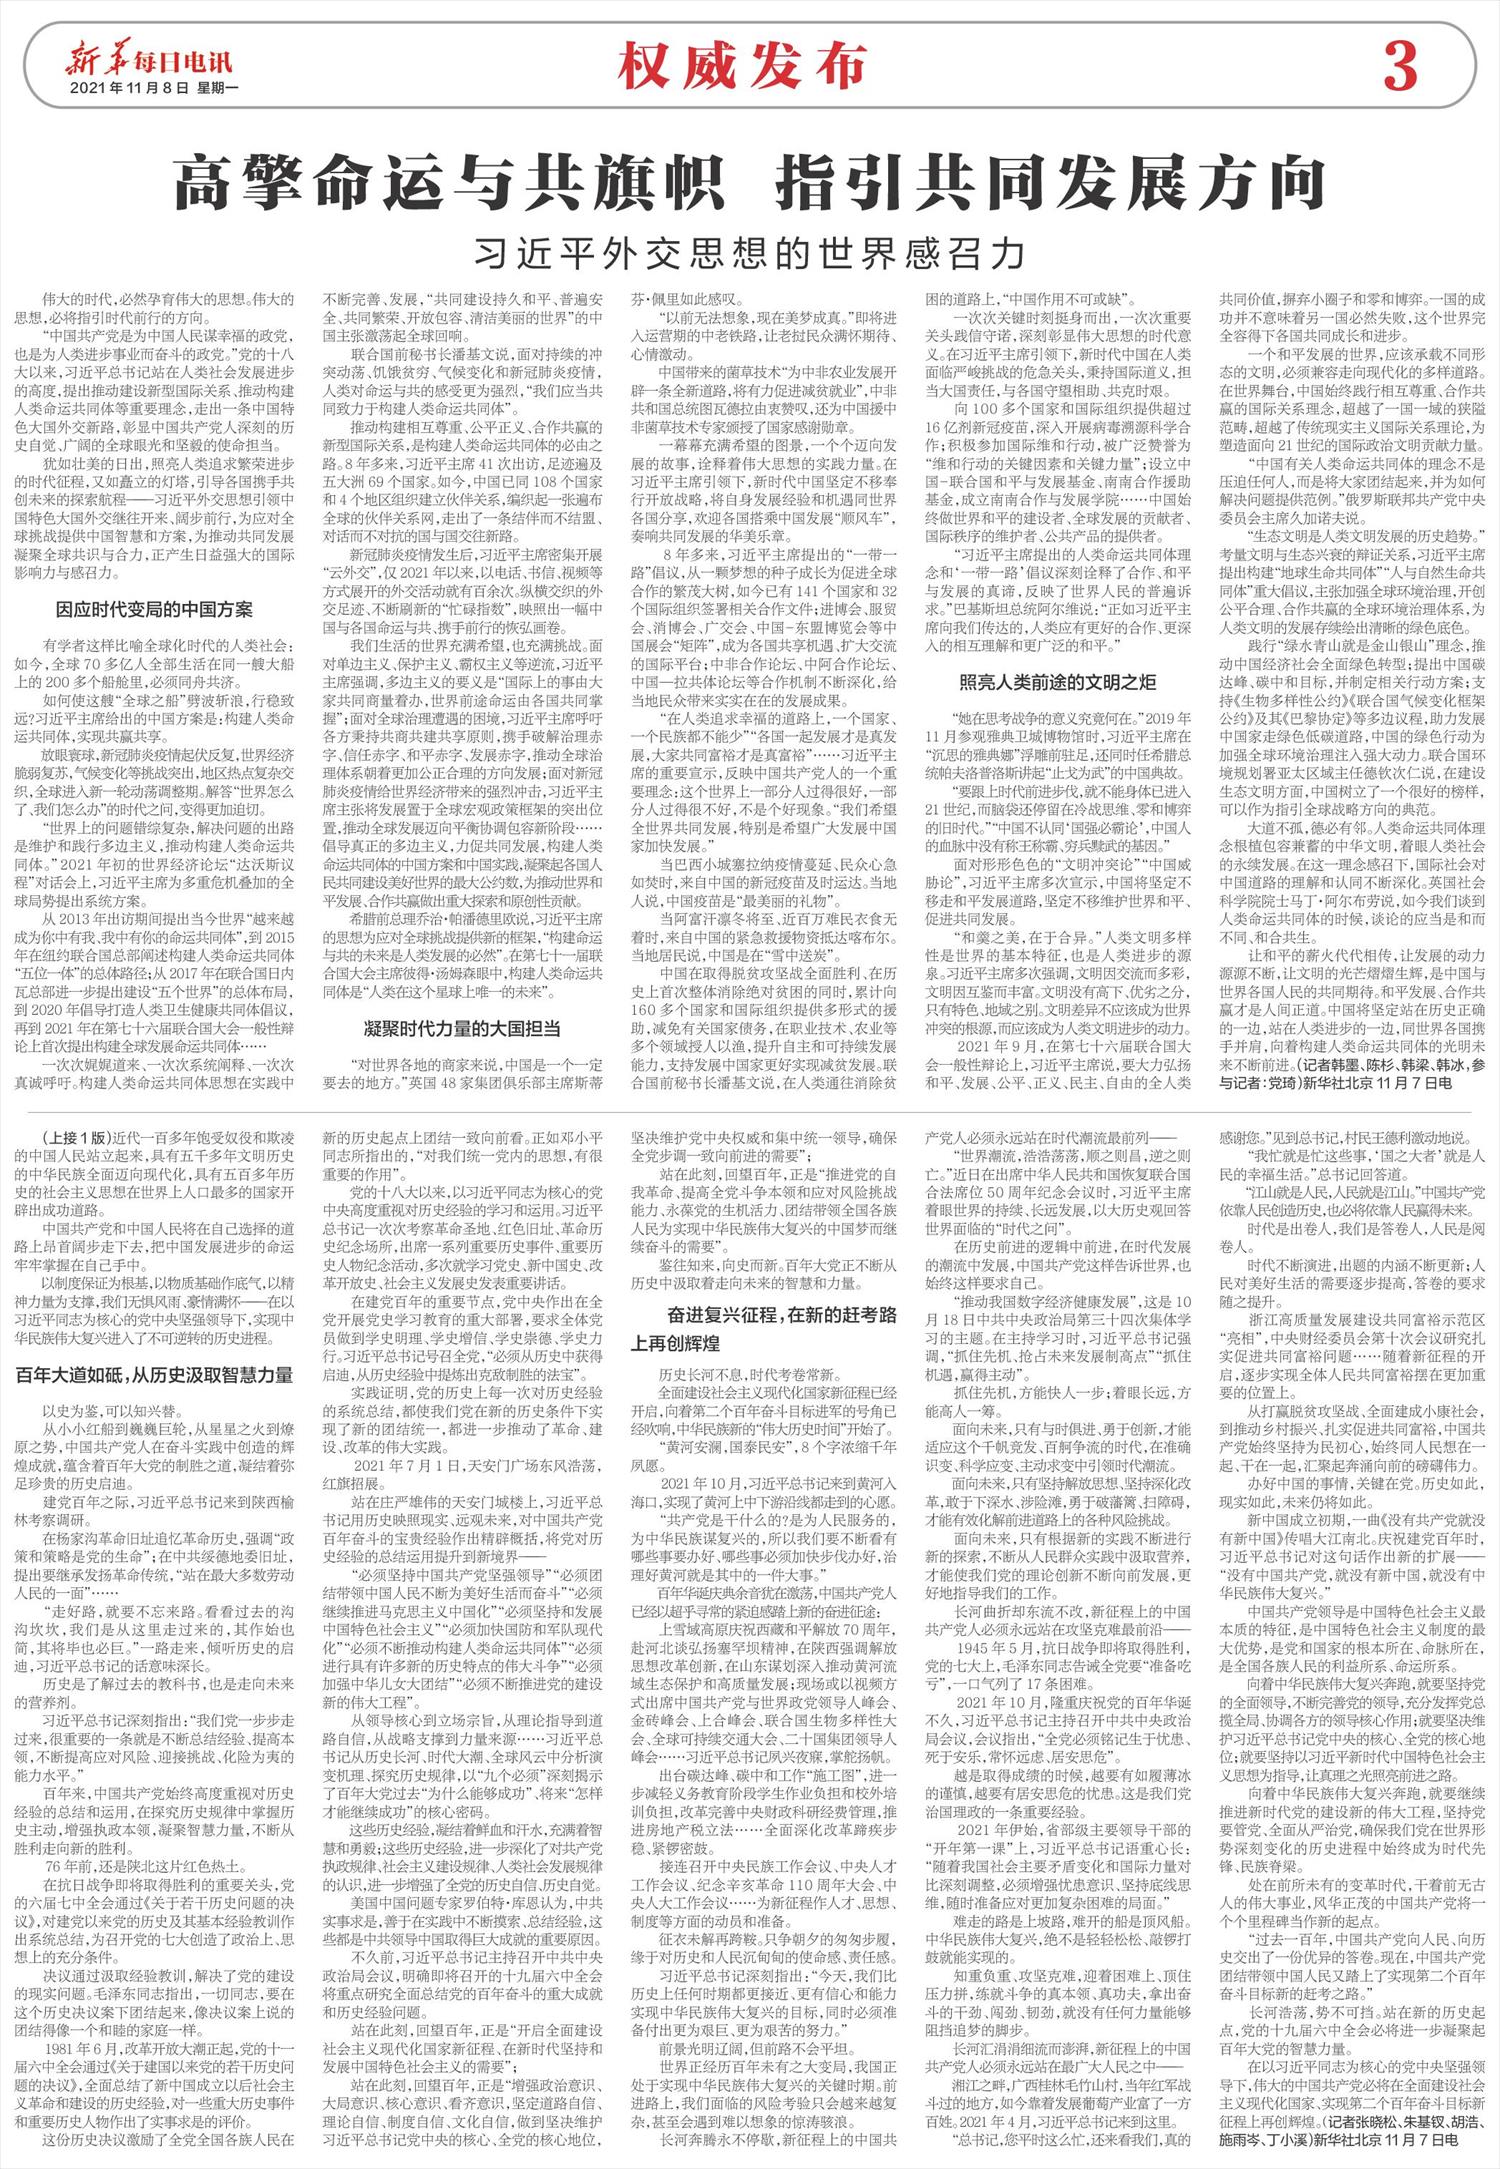 新华每日电讯-微报纸-2021年11月08日